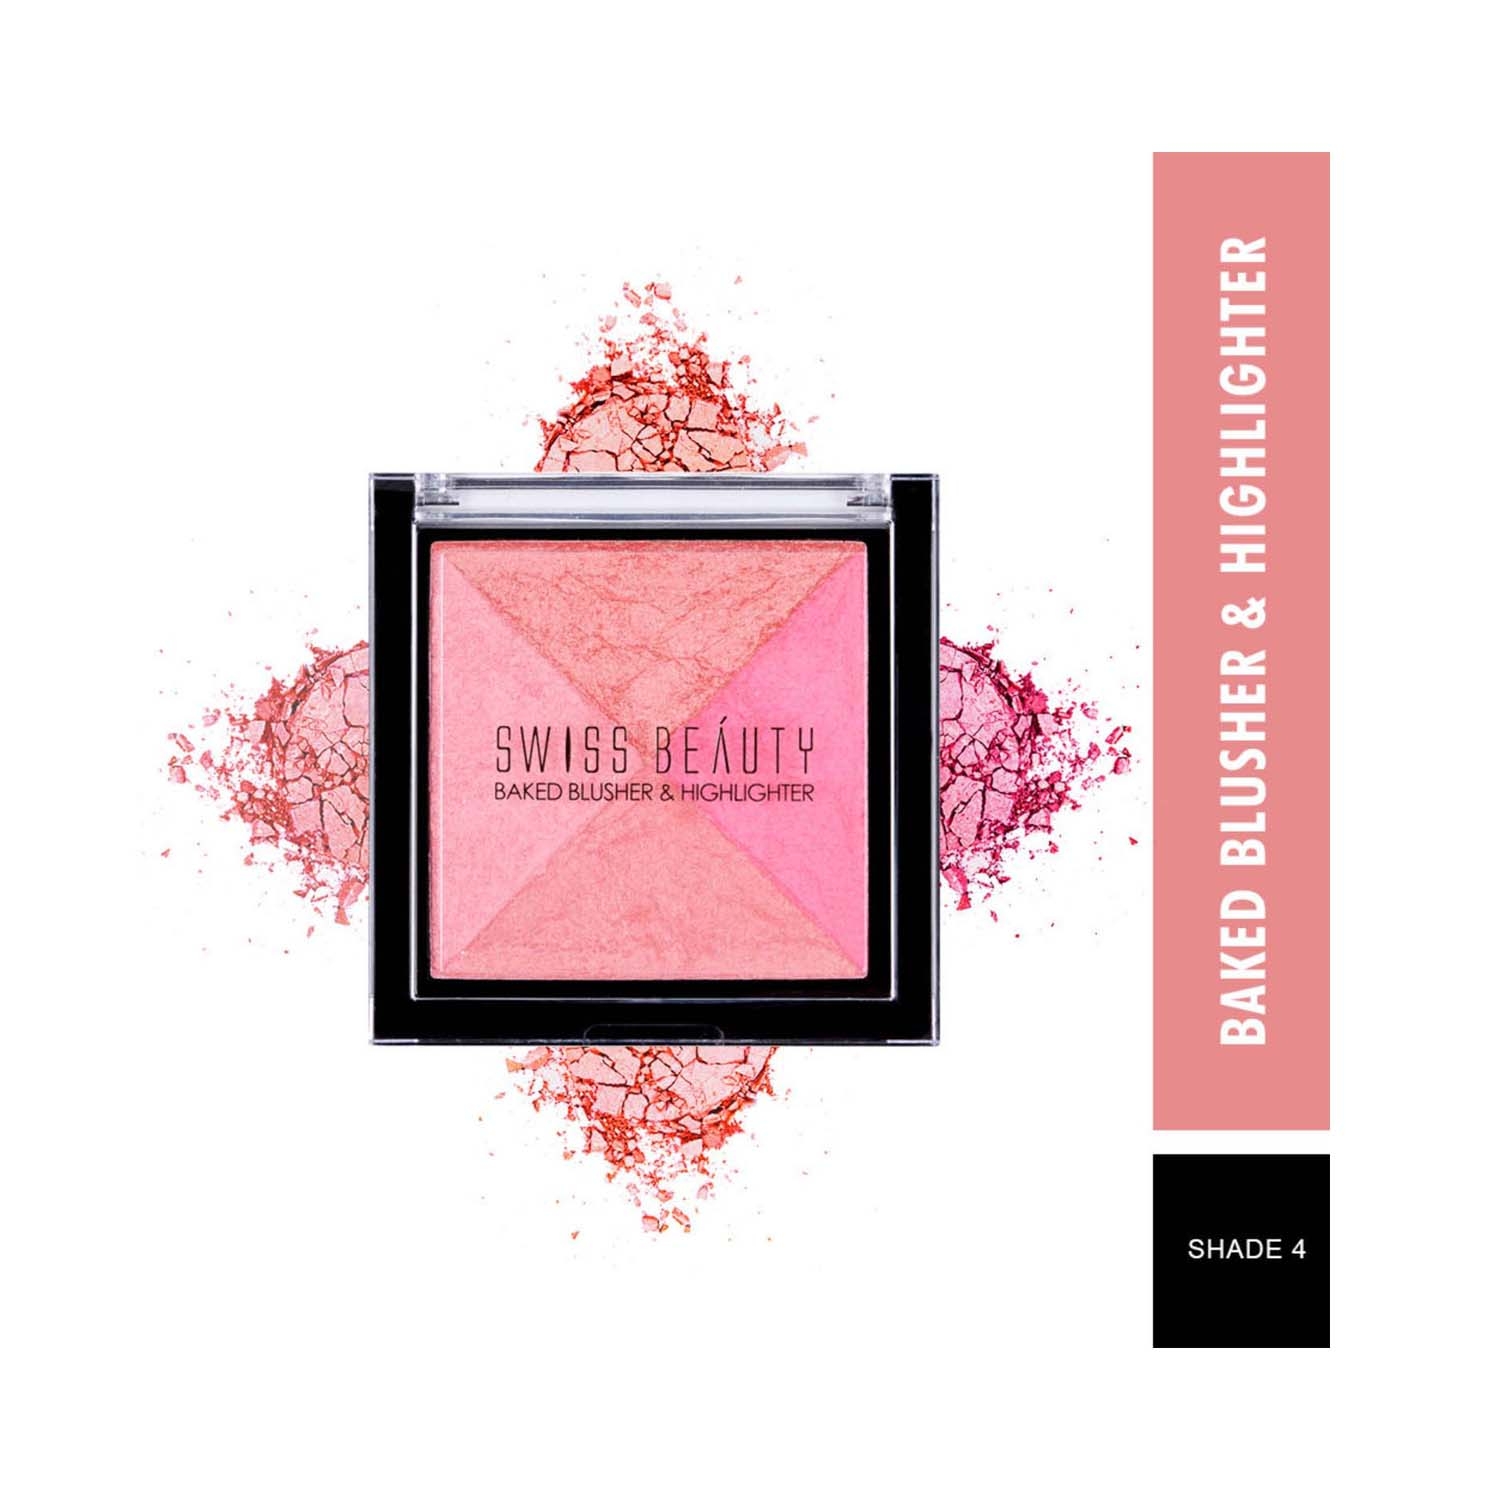 Swiss Beauty | Swiss Beauty Baked Blusher & Highlighter Palette - Shade 4 (7g)